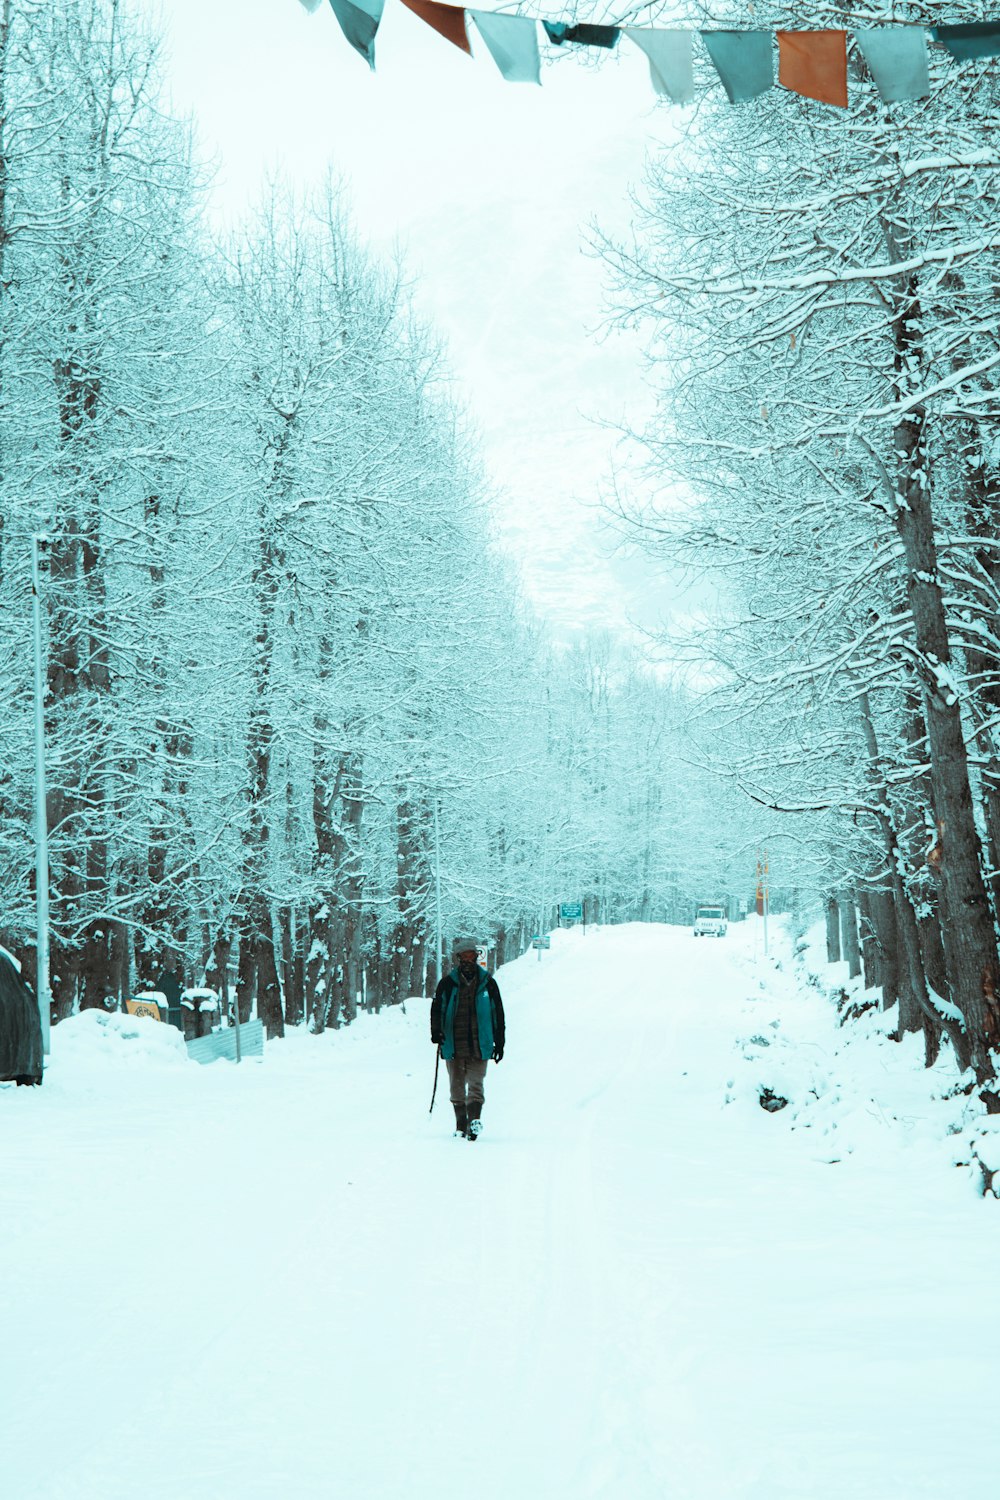 Eine Person, die durch einen schneebedeckten Wald geht